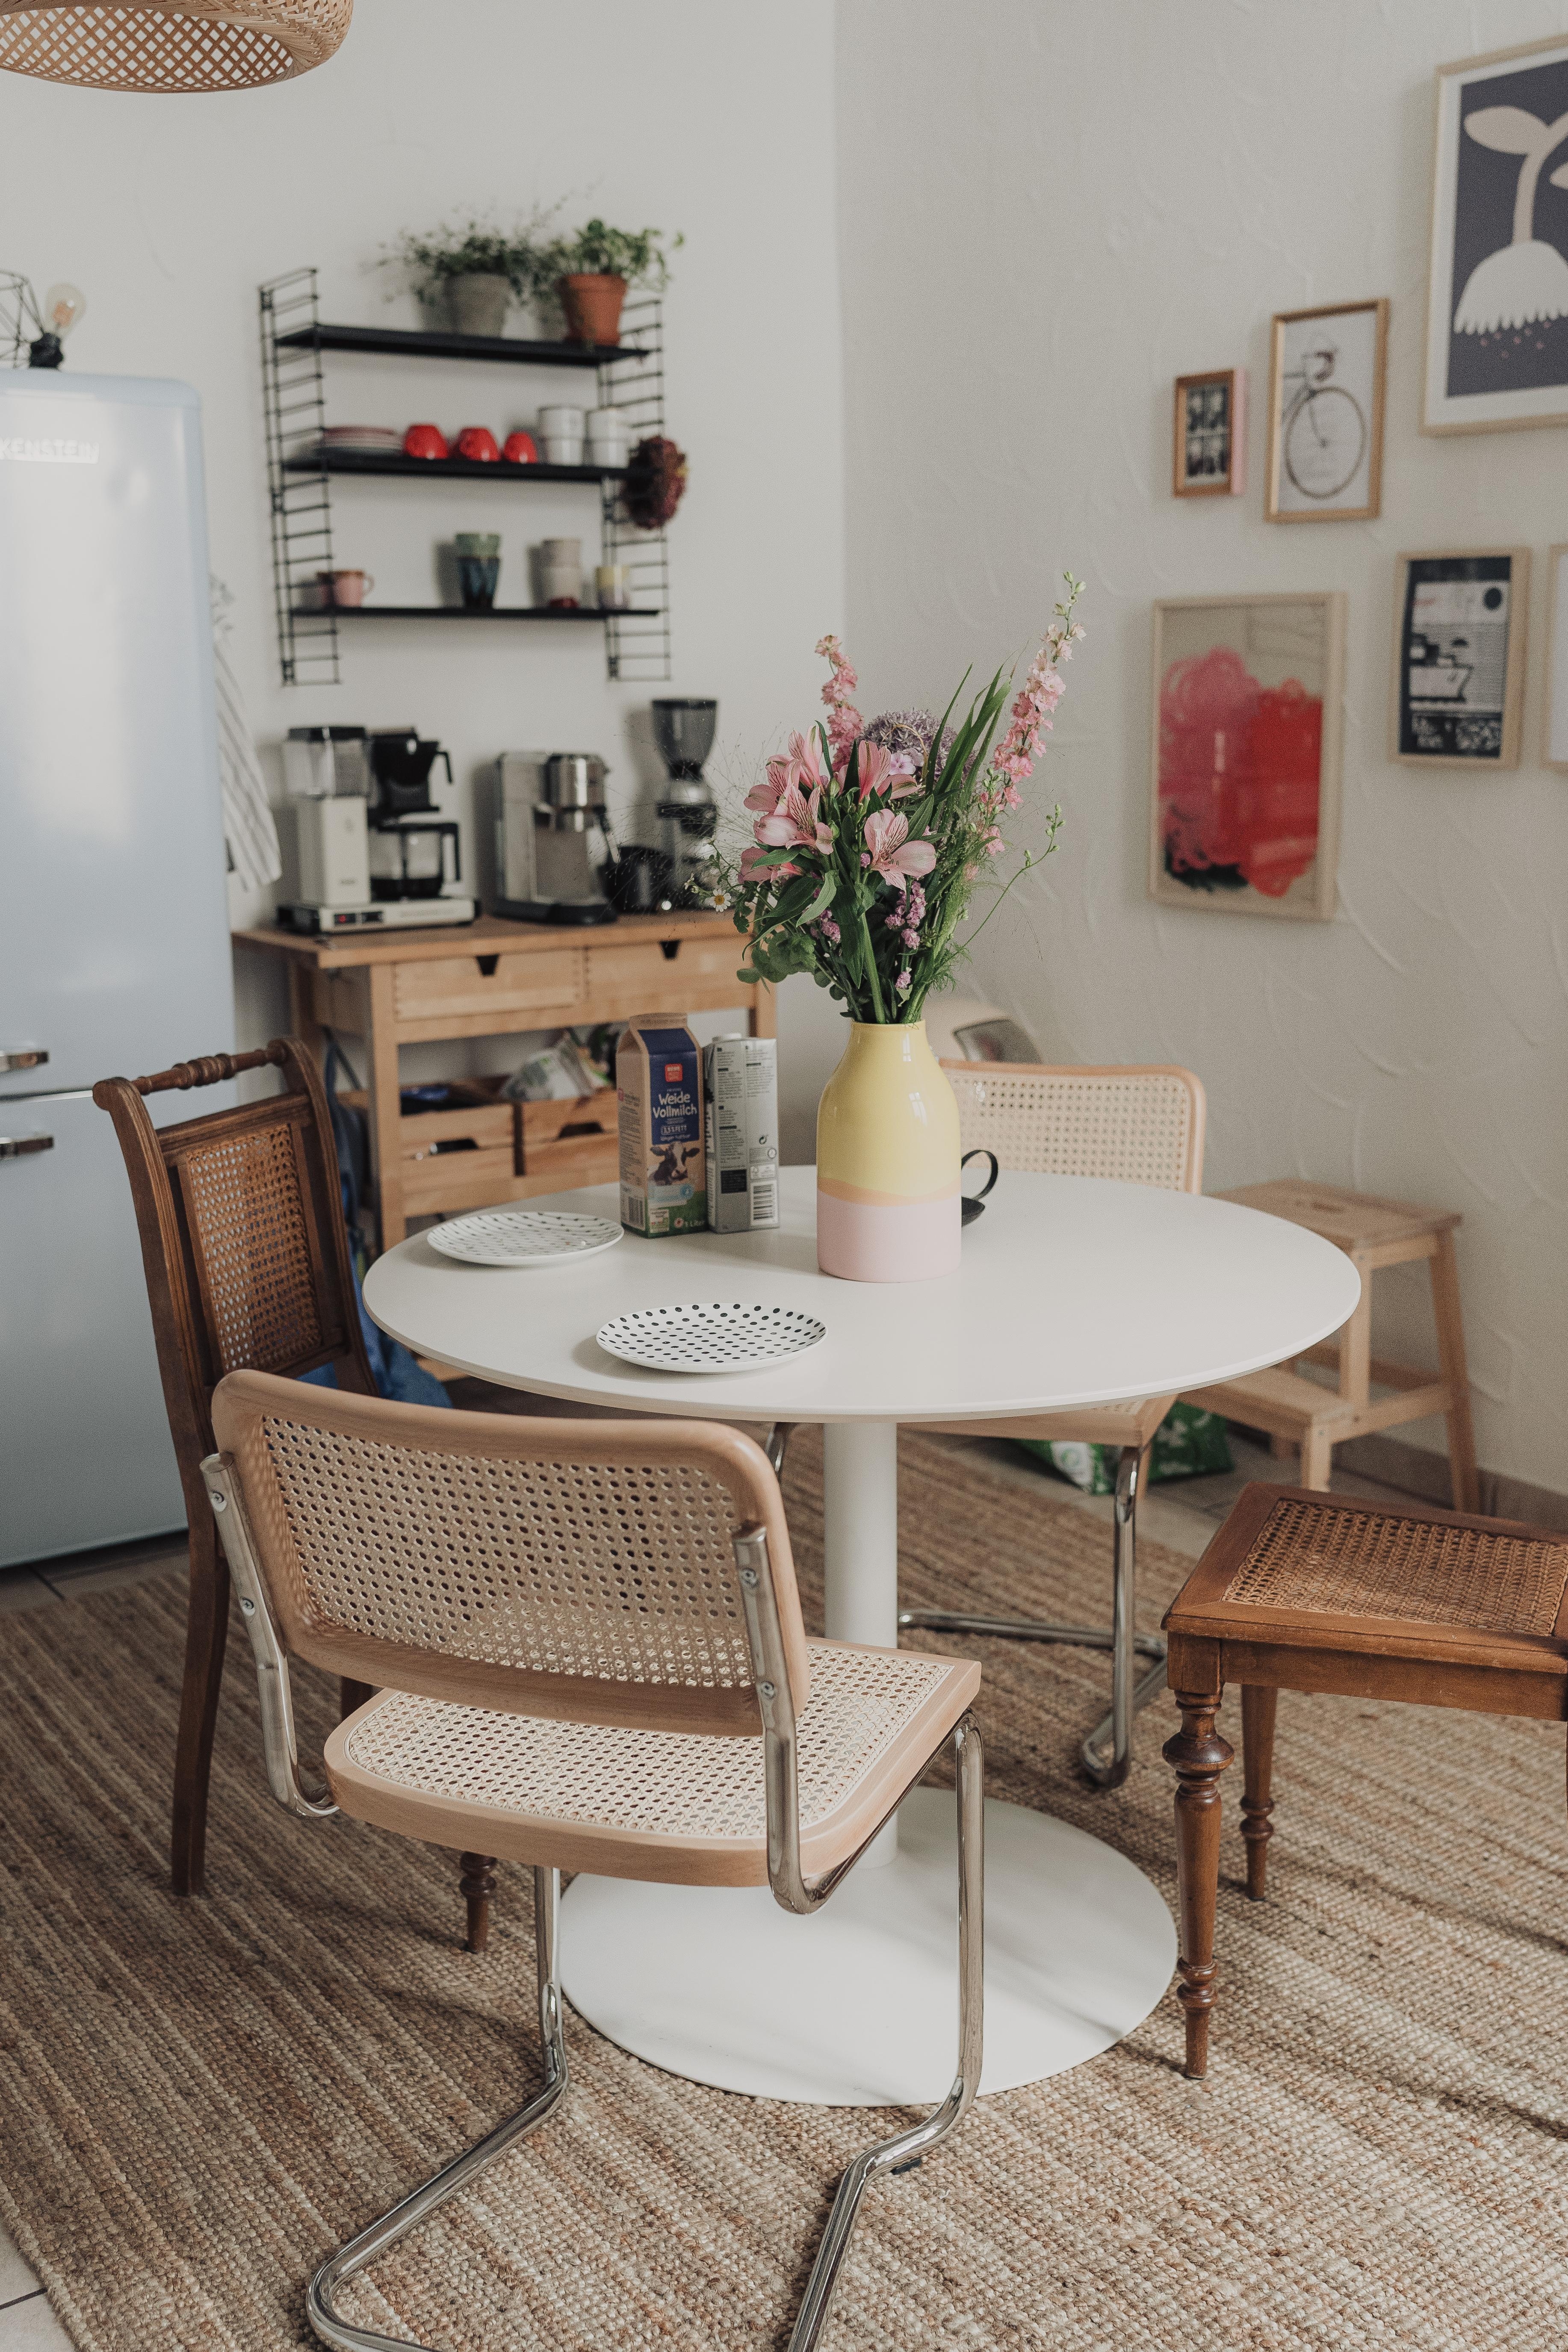 In die Küche gehört eine Kaffee-Ecke ☕️ #kaffee #küche #kitchen #couchstyle